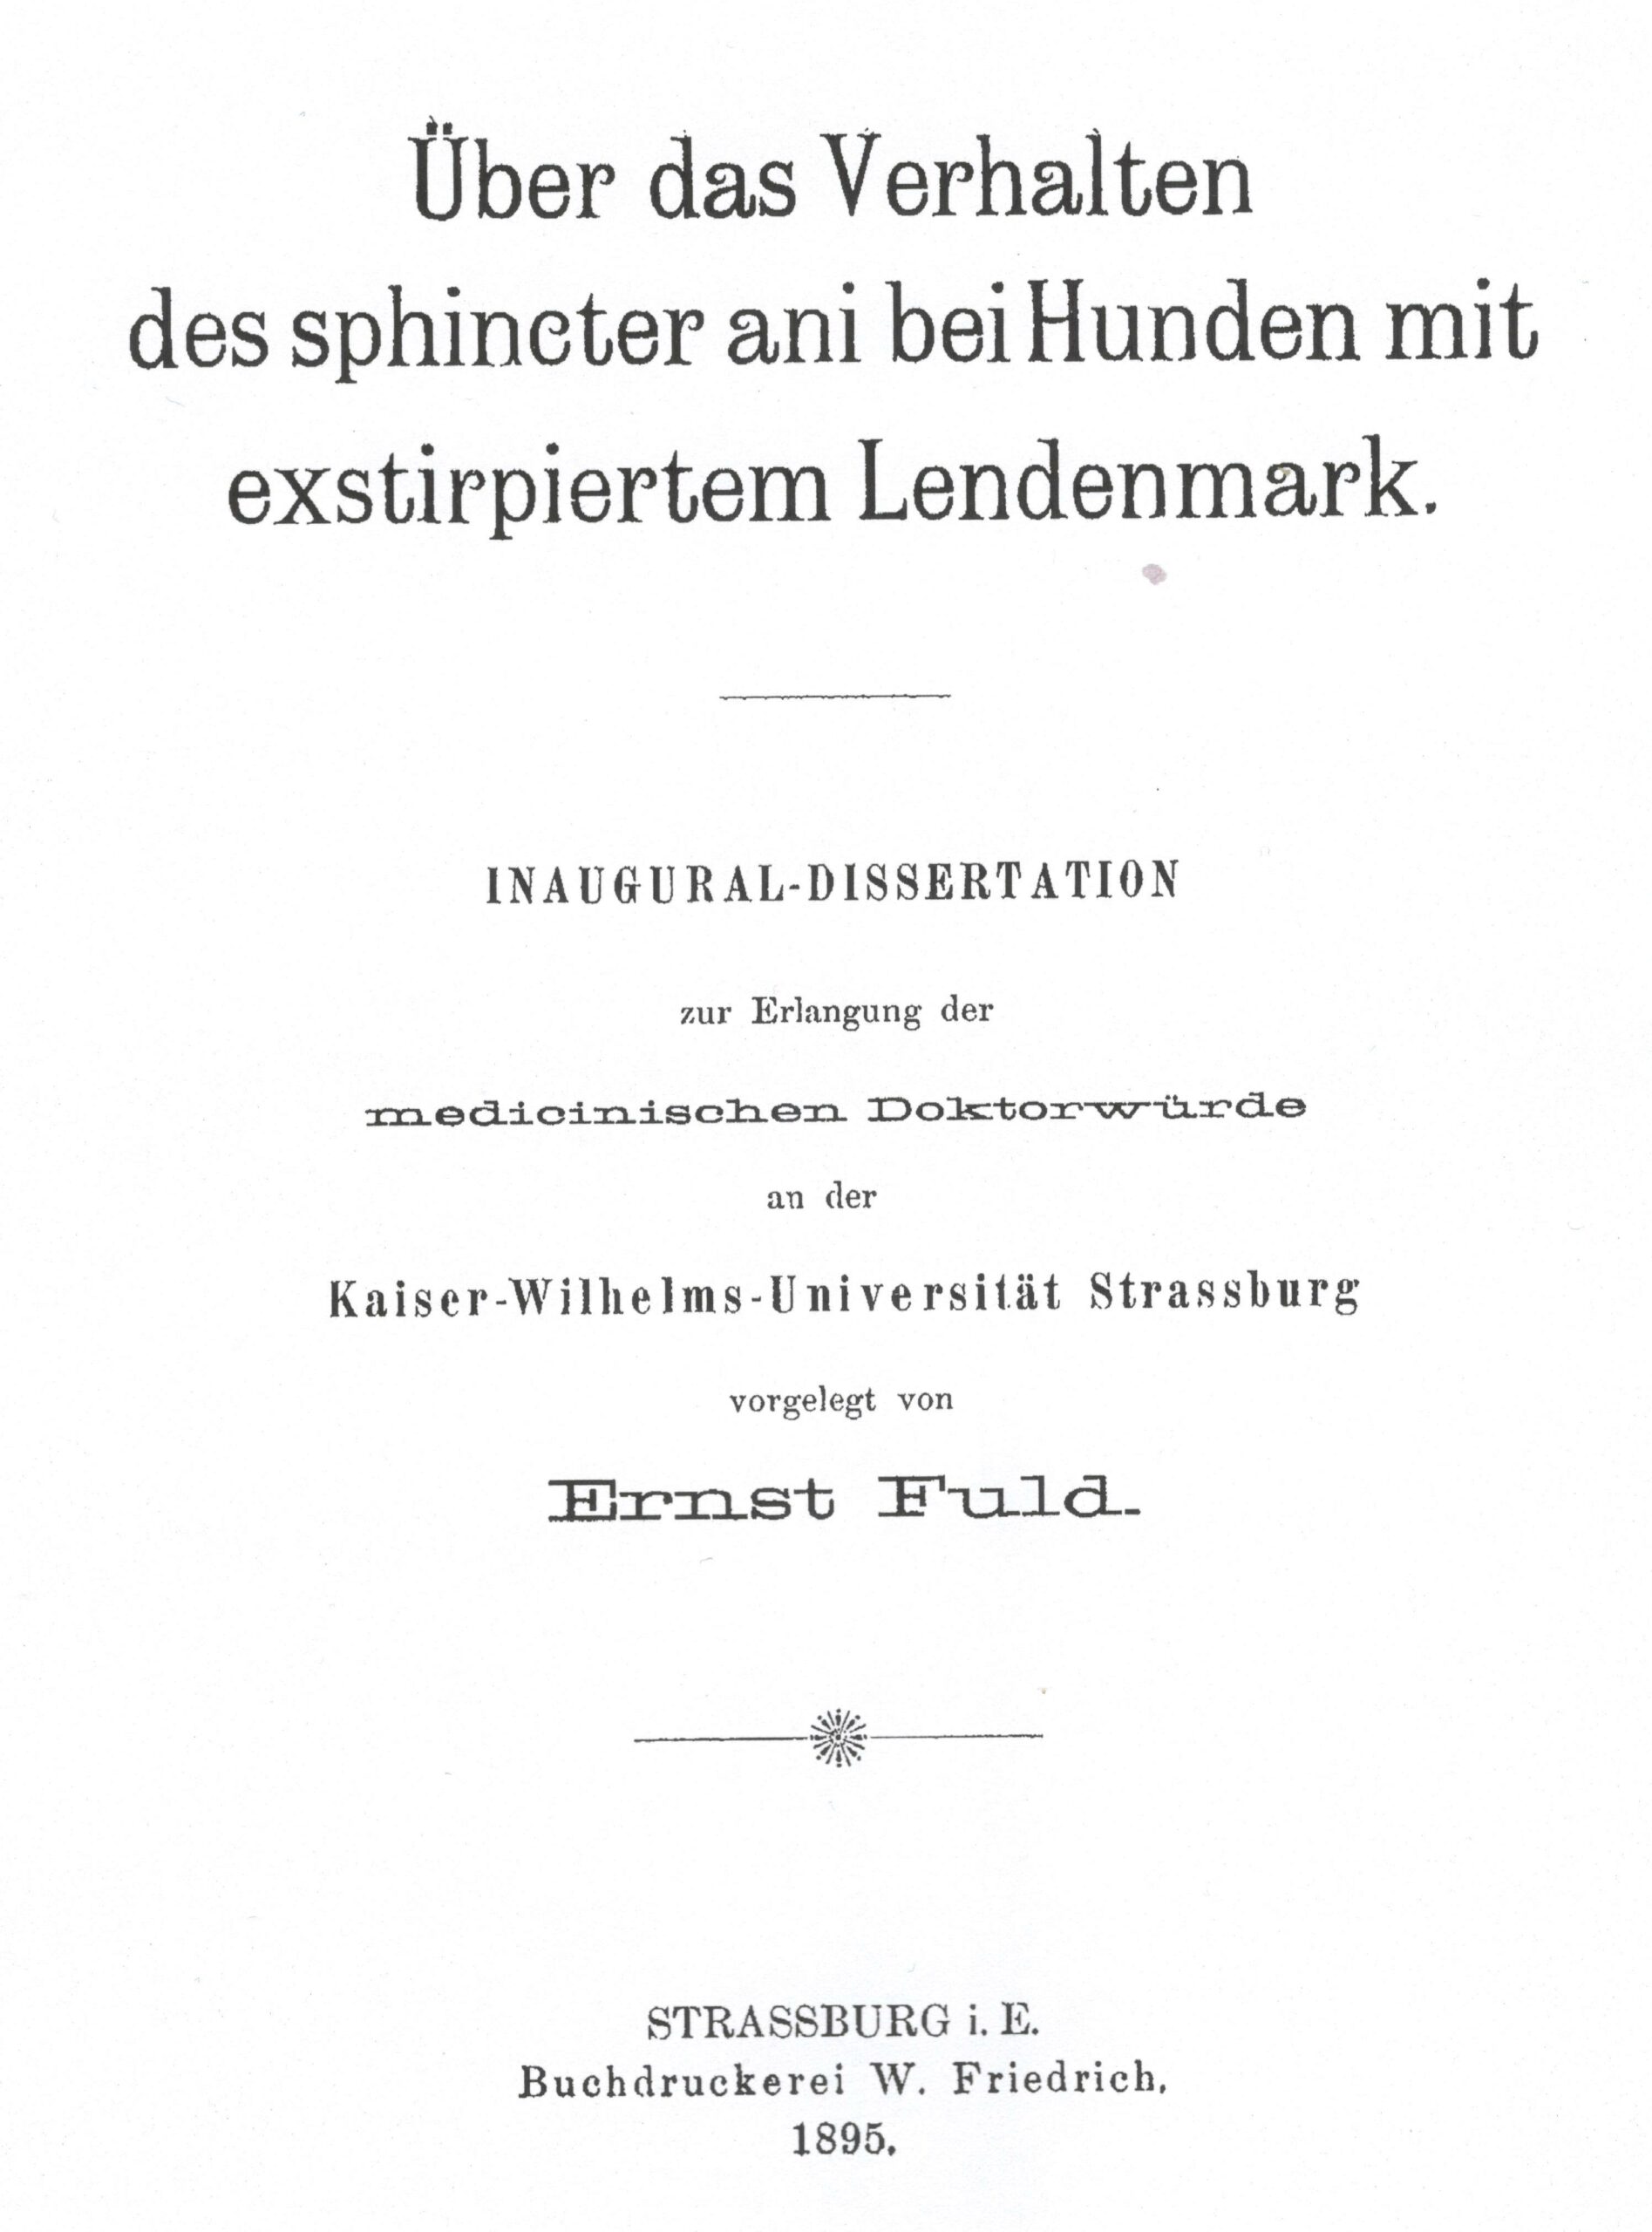 Dissertation, Straßburg 1895